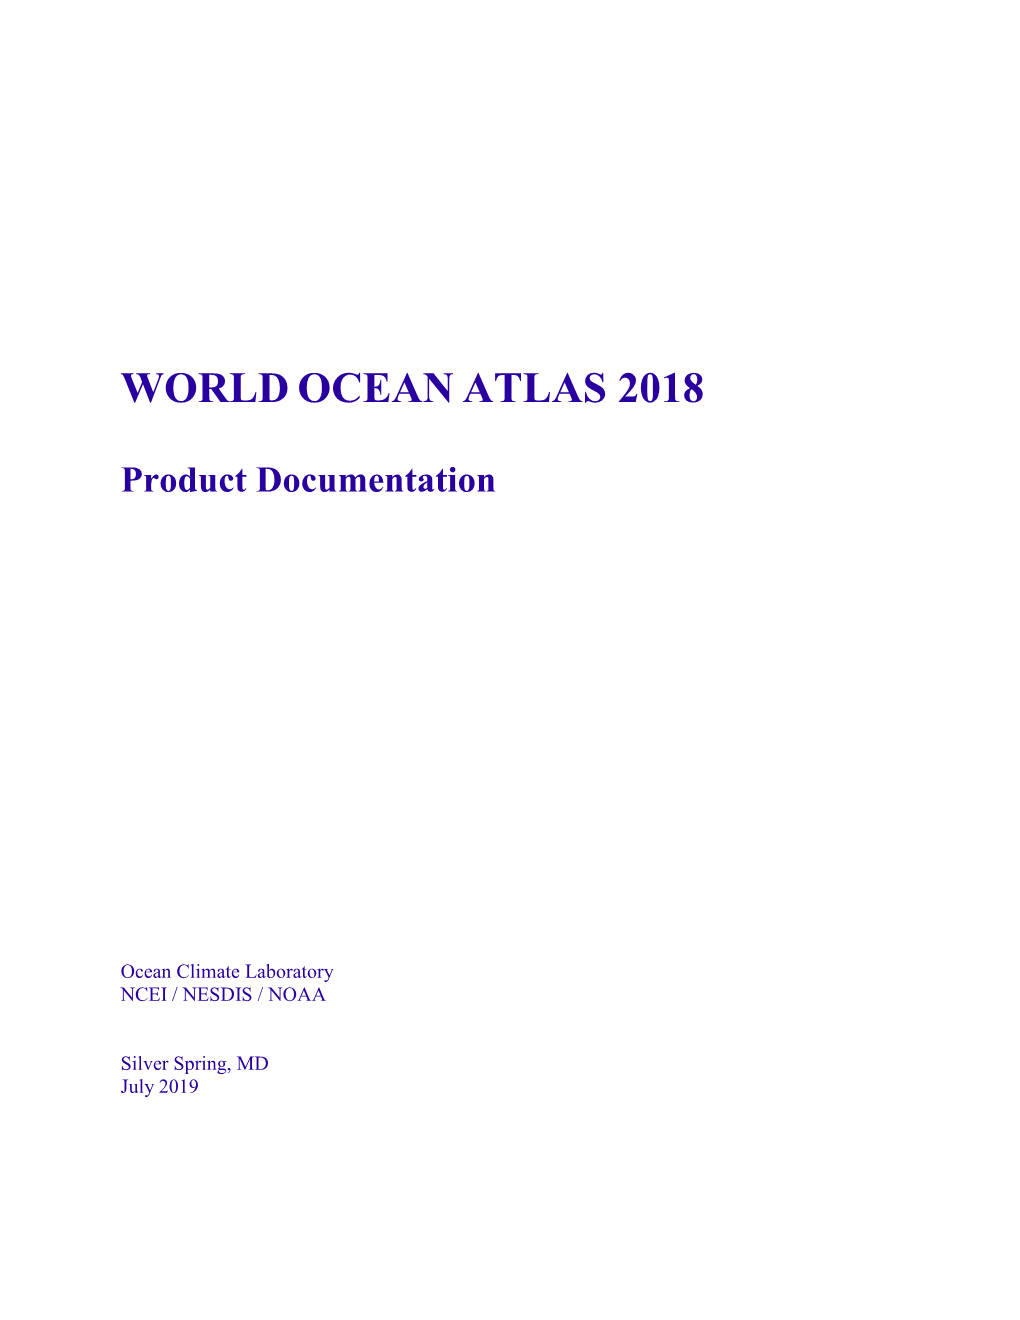 World Ocean Atlas 2018